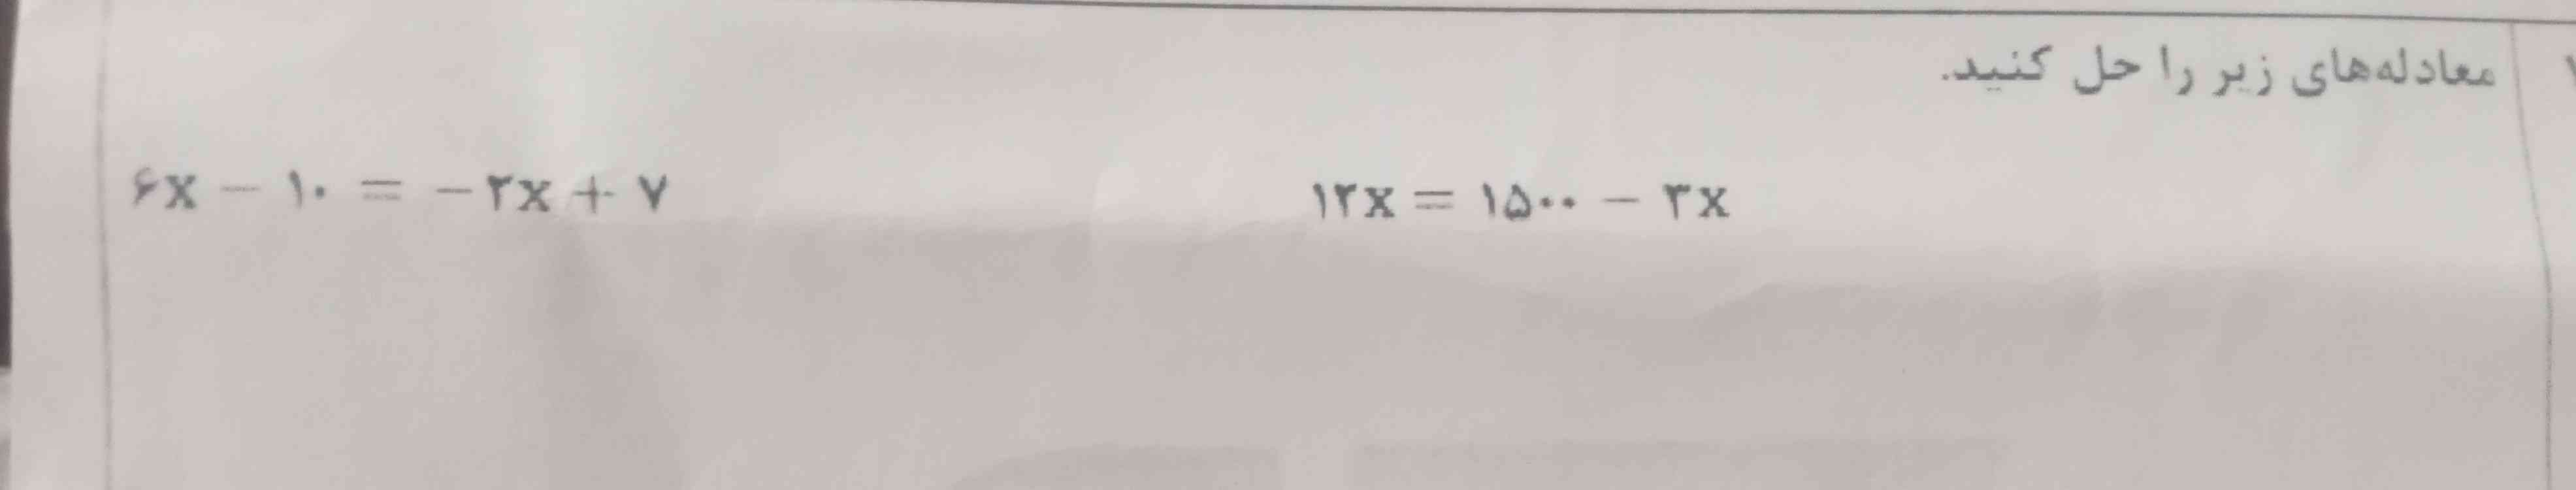 این معادله چجوری حل میشه ؟